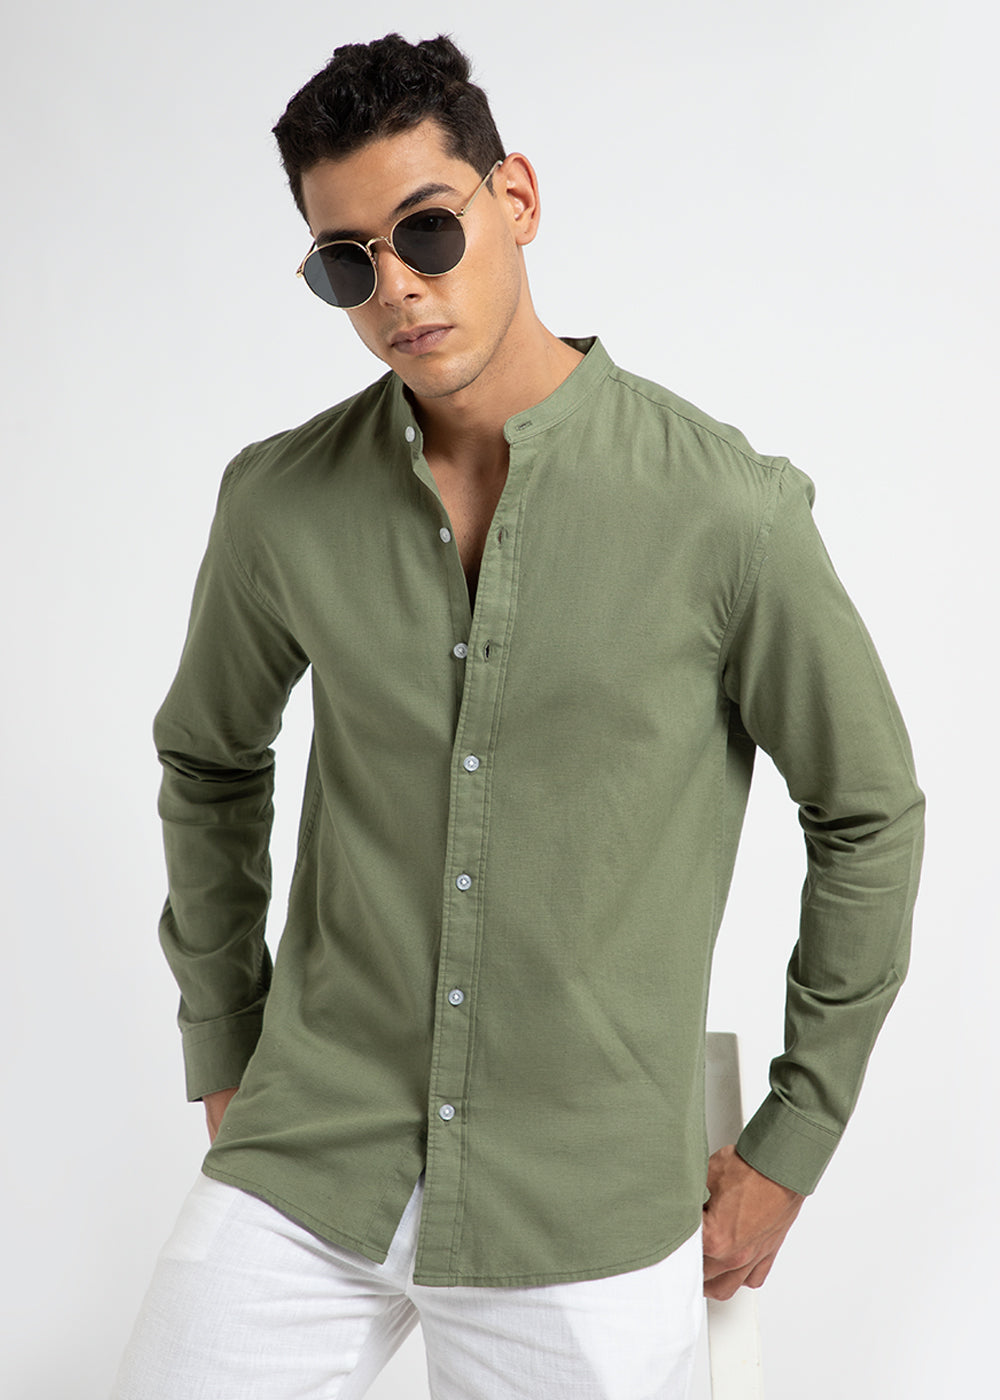 Kelly Green Cotton Linen Shirt